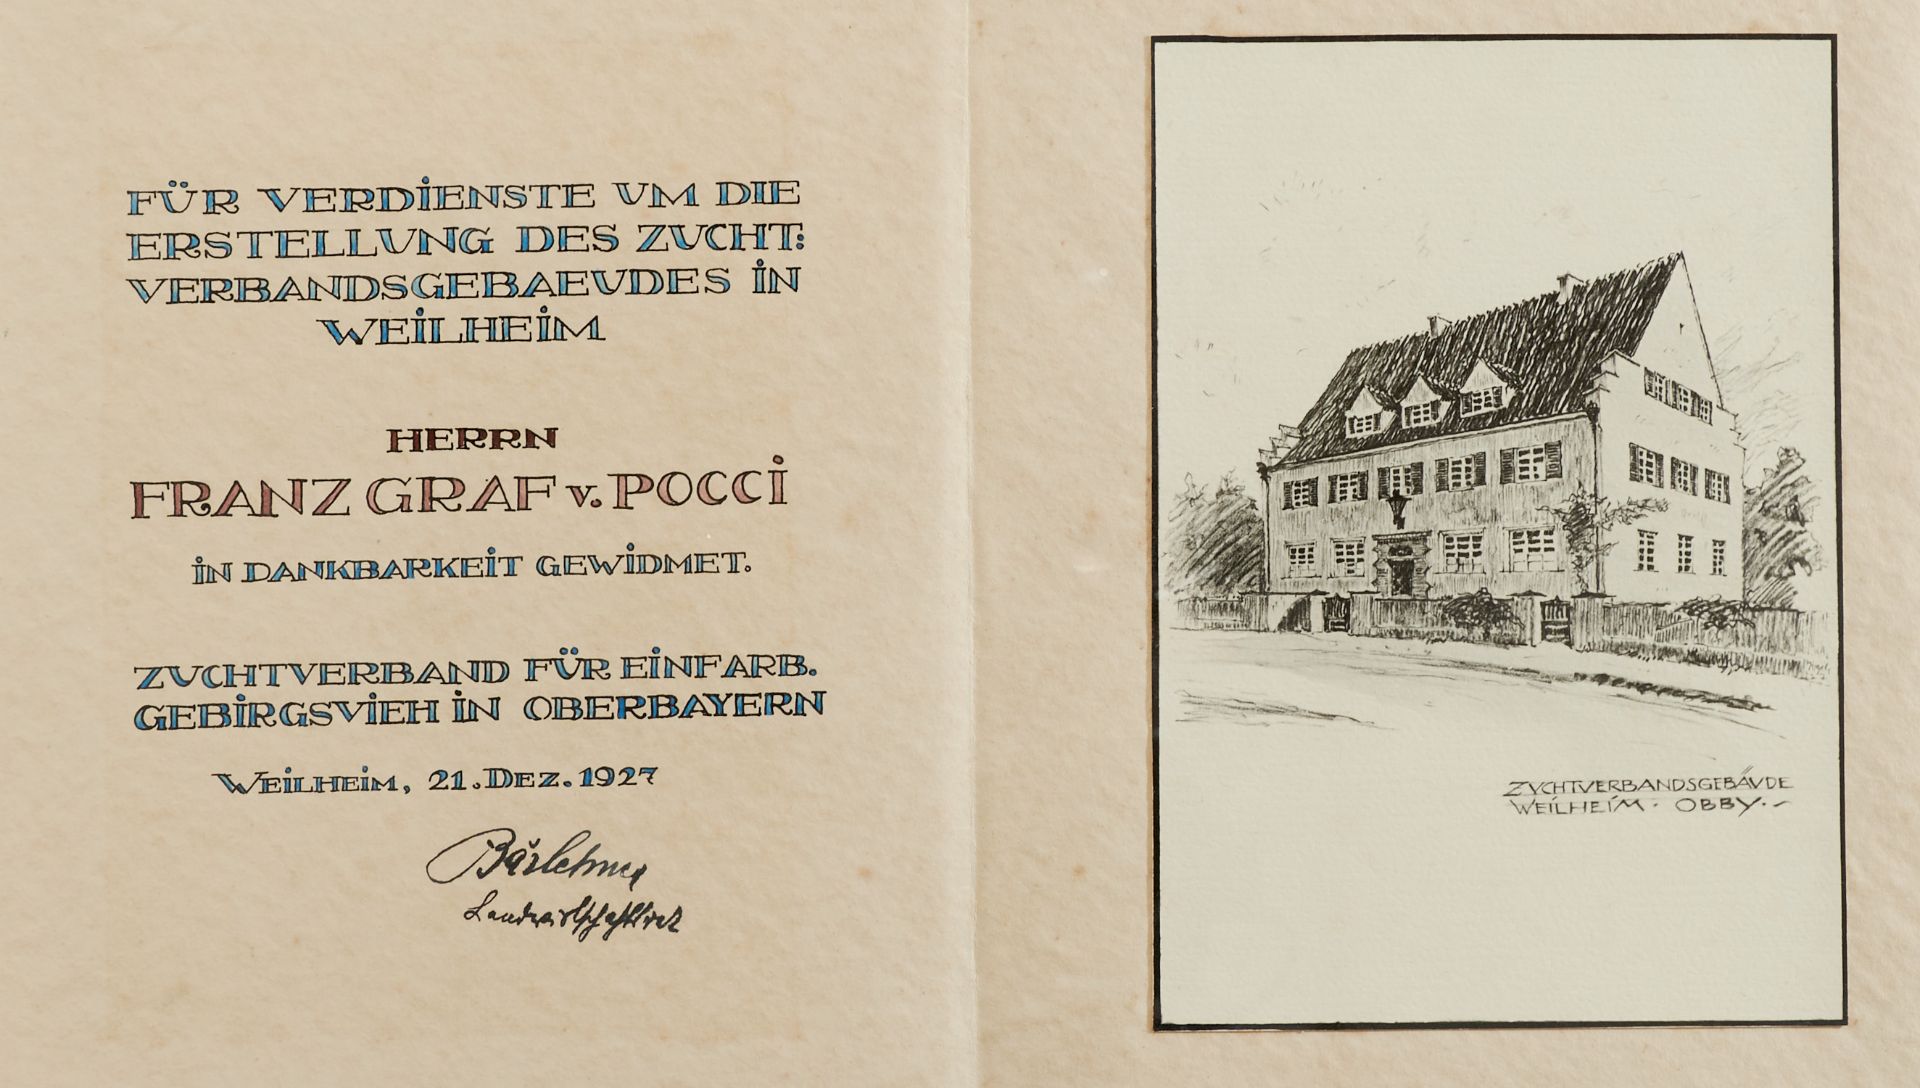 Der Hausbau des Zuchtverbandes für einfarbiges Gebirgsvieh in Oberbayern 1927 - Image 4 of 4